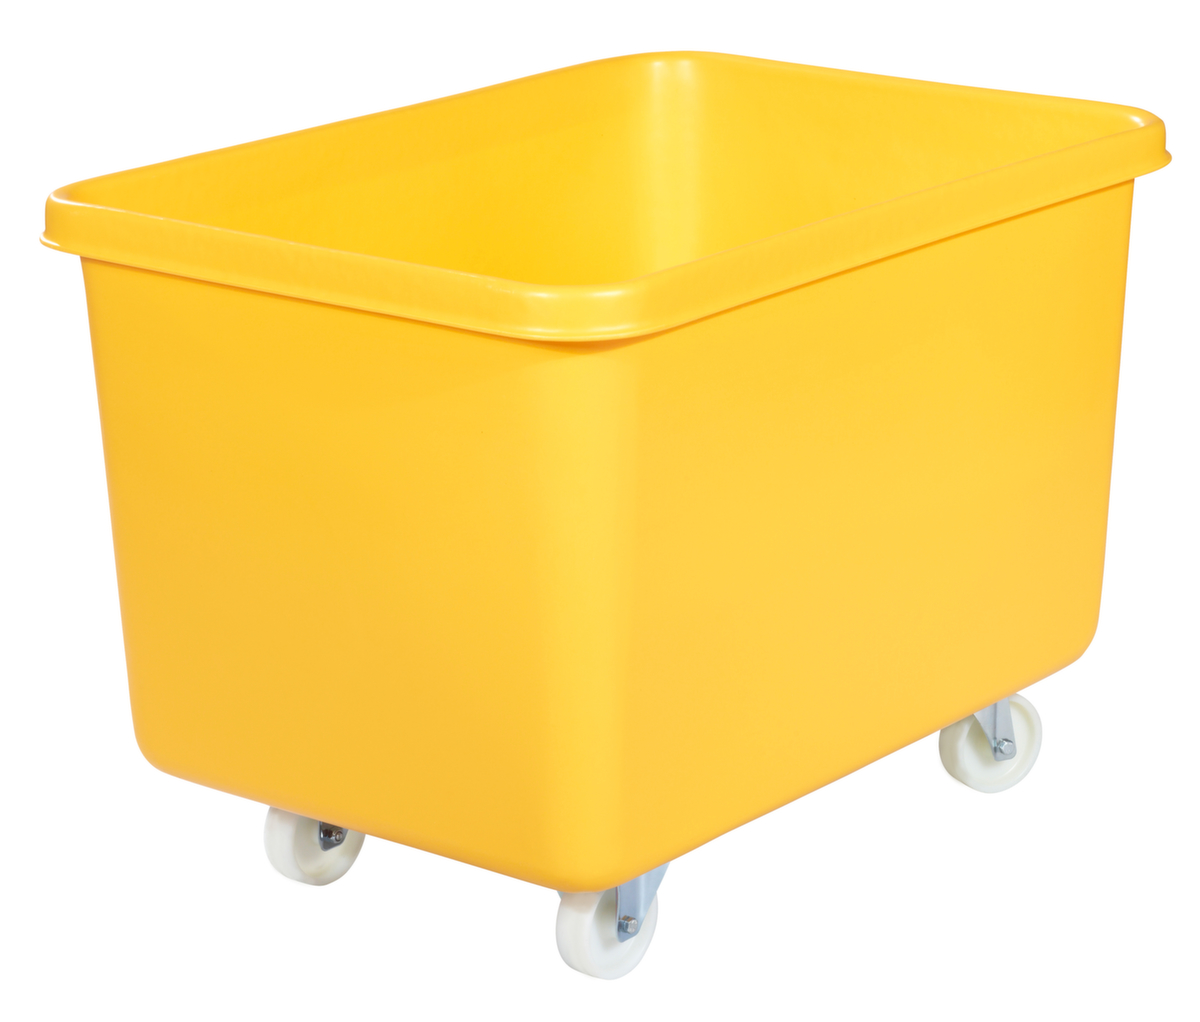 Mobiele rechthoekige container voedselveilig + versterkte basis, inhoud 340 l, geel  ZOOM